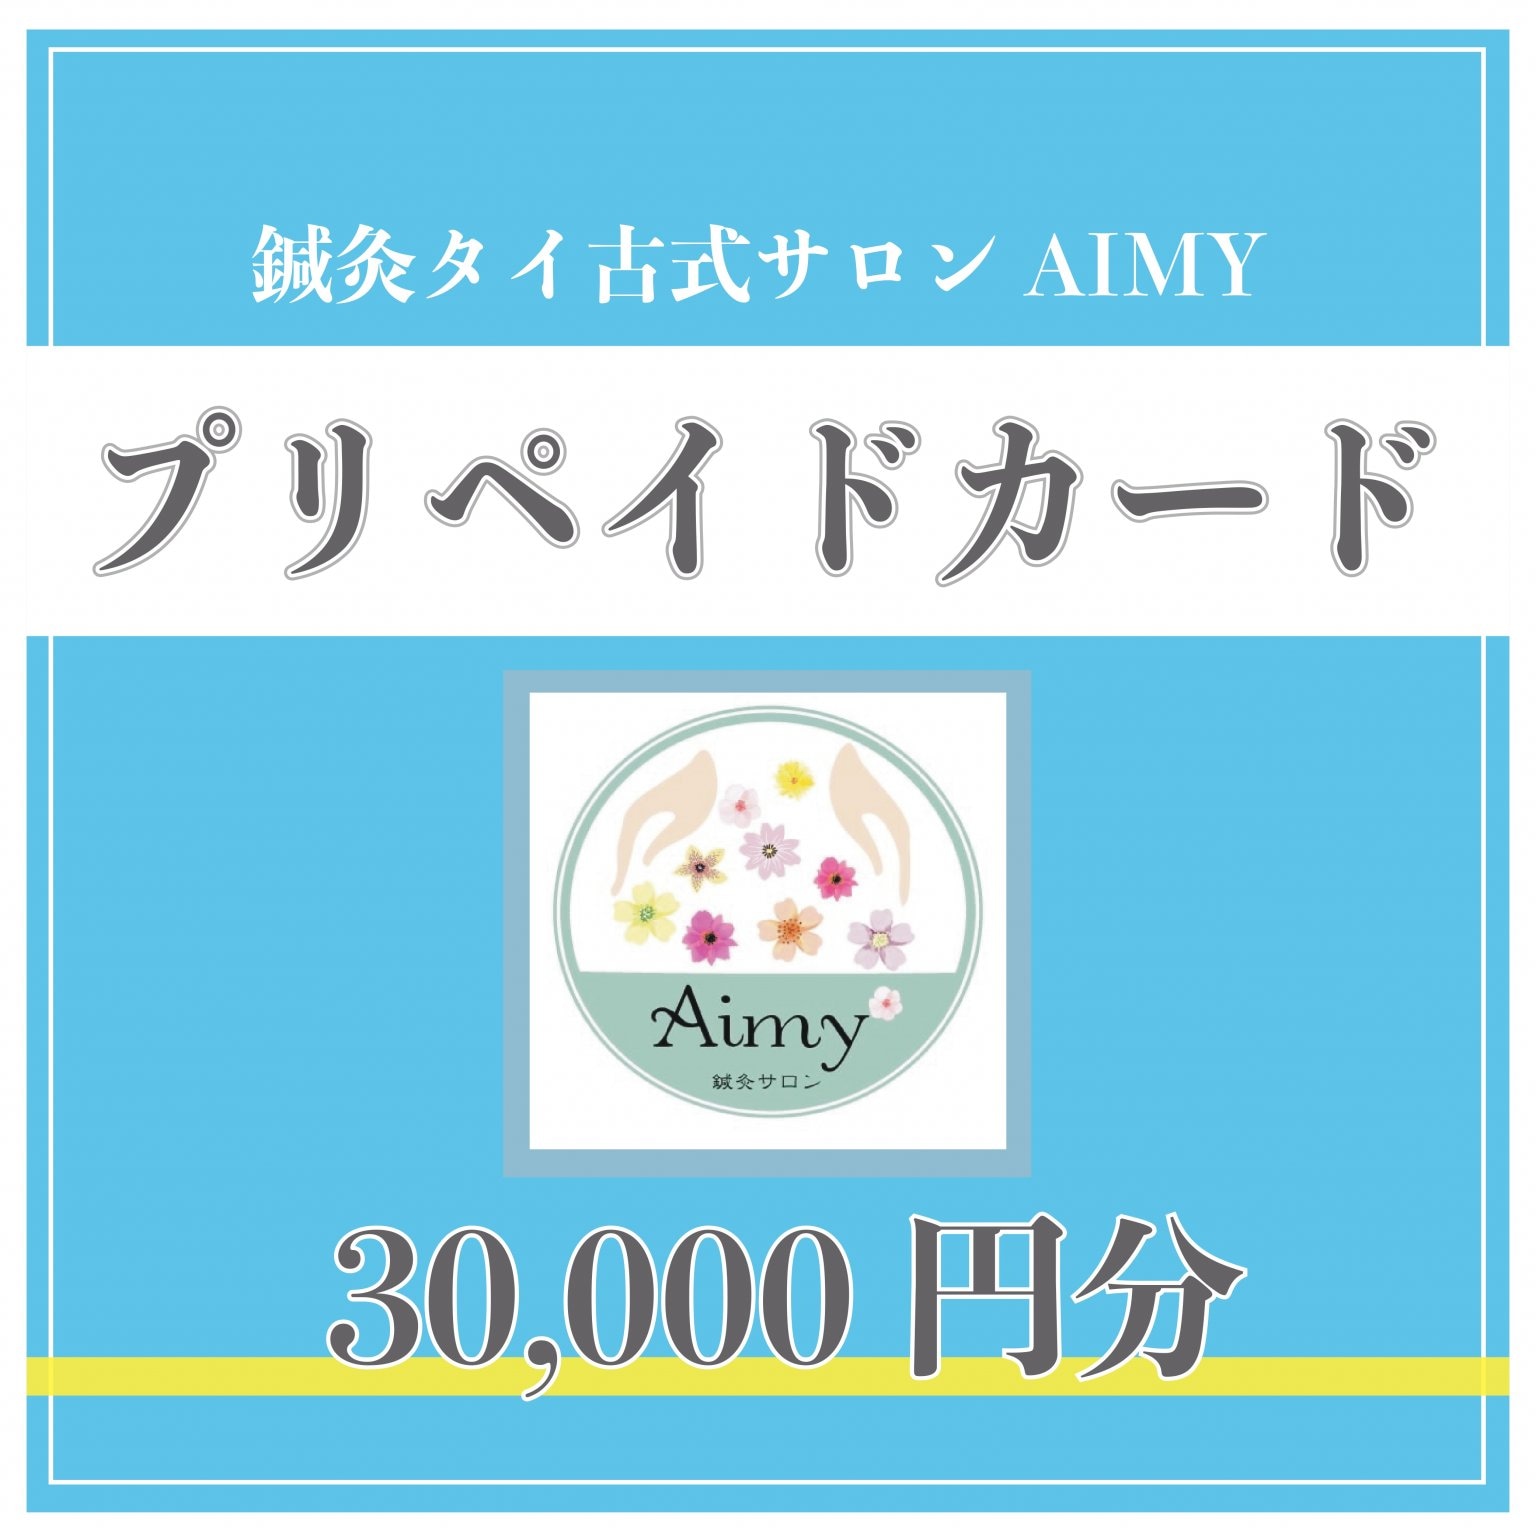 AIMY専用プリペイドカード3万円